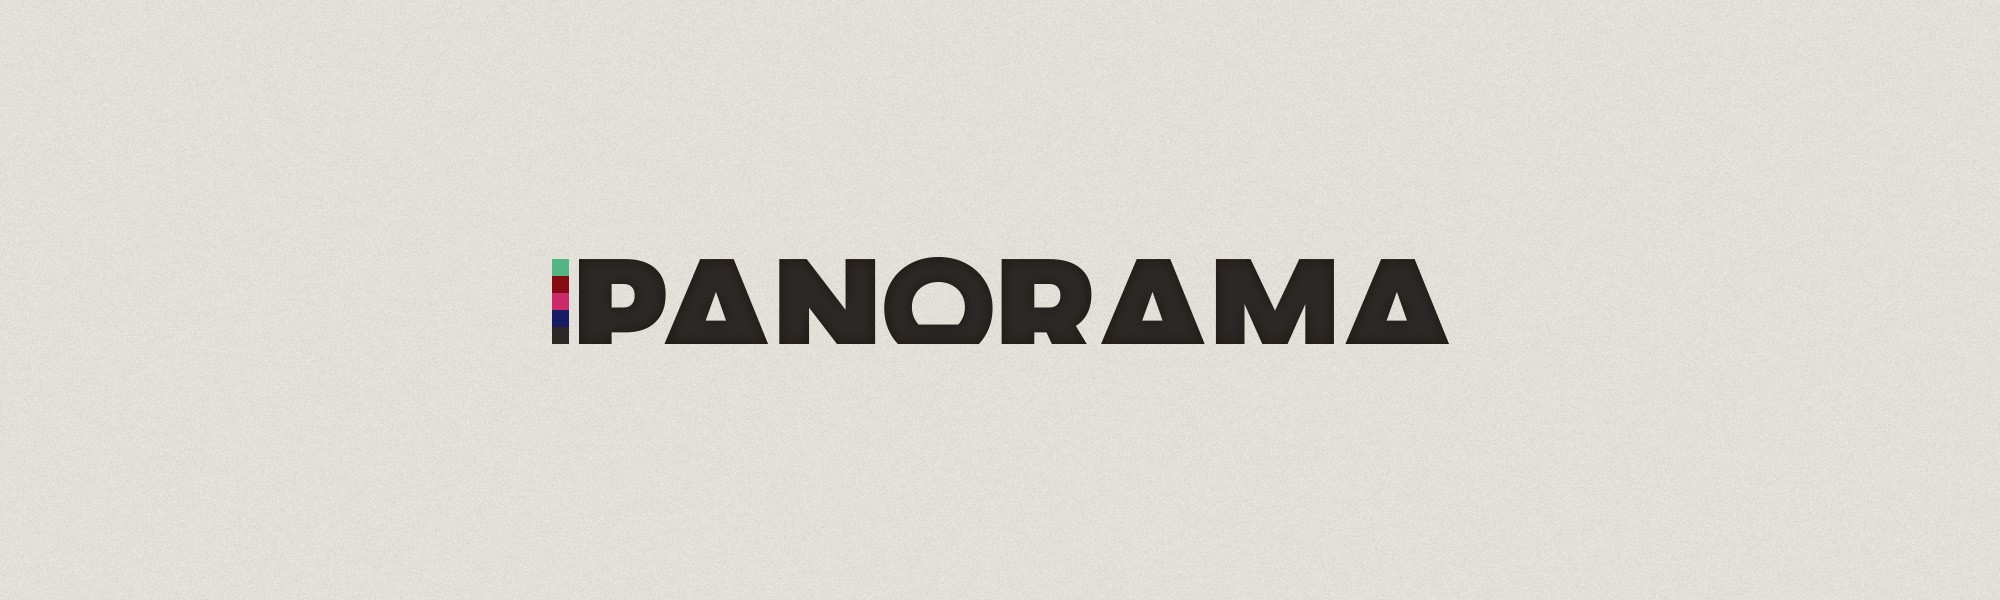 Logo de Panorama, le projet d'innovation de Libéo présenté au Hackathon de Radio-Canada